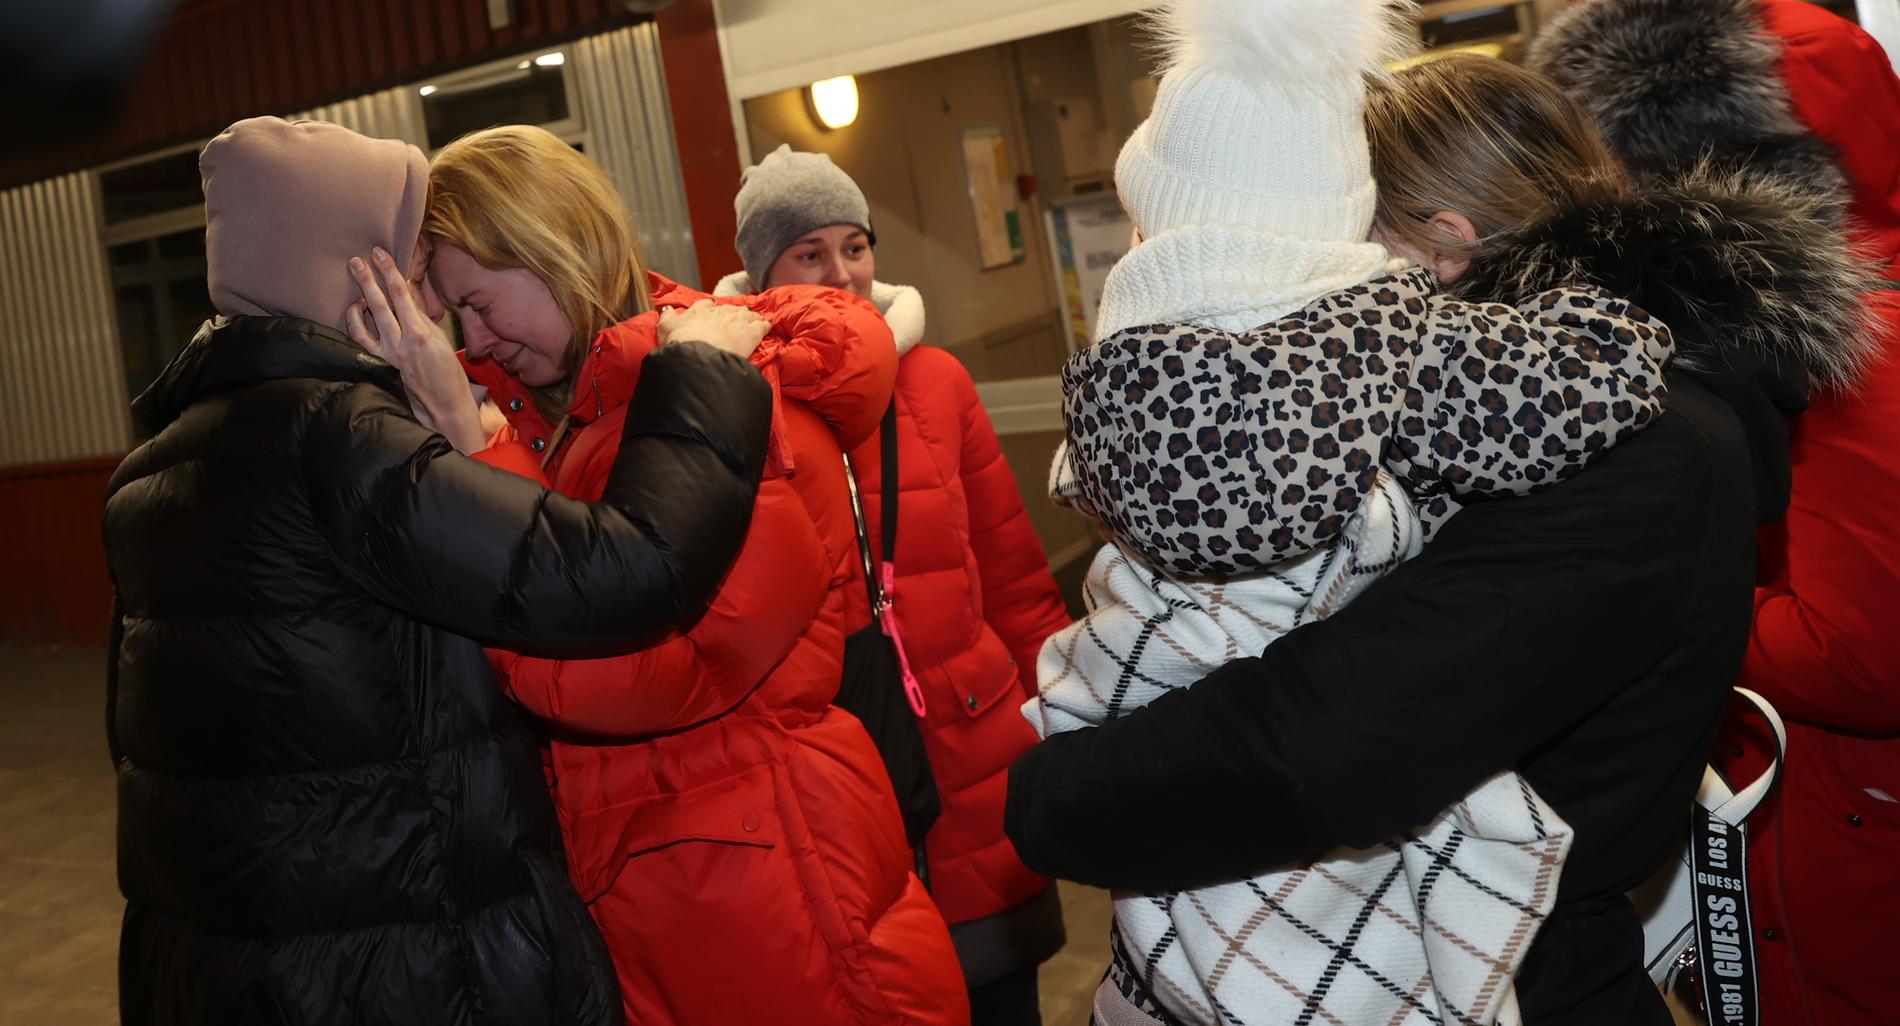 Ivankas syster kramar om deras mamma vid färjeterminalen direkt efter att de kommit till Sverige. 